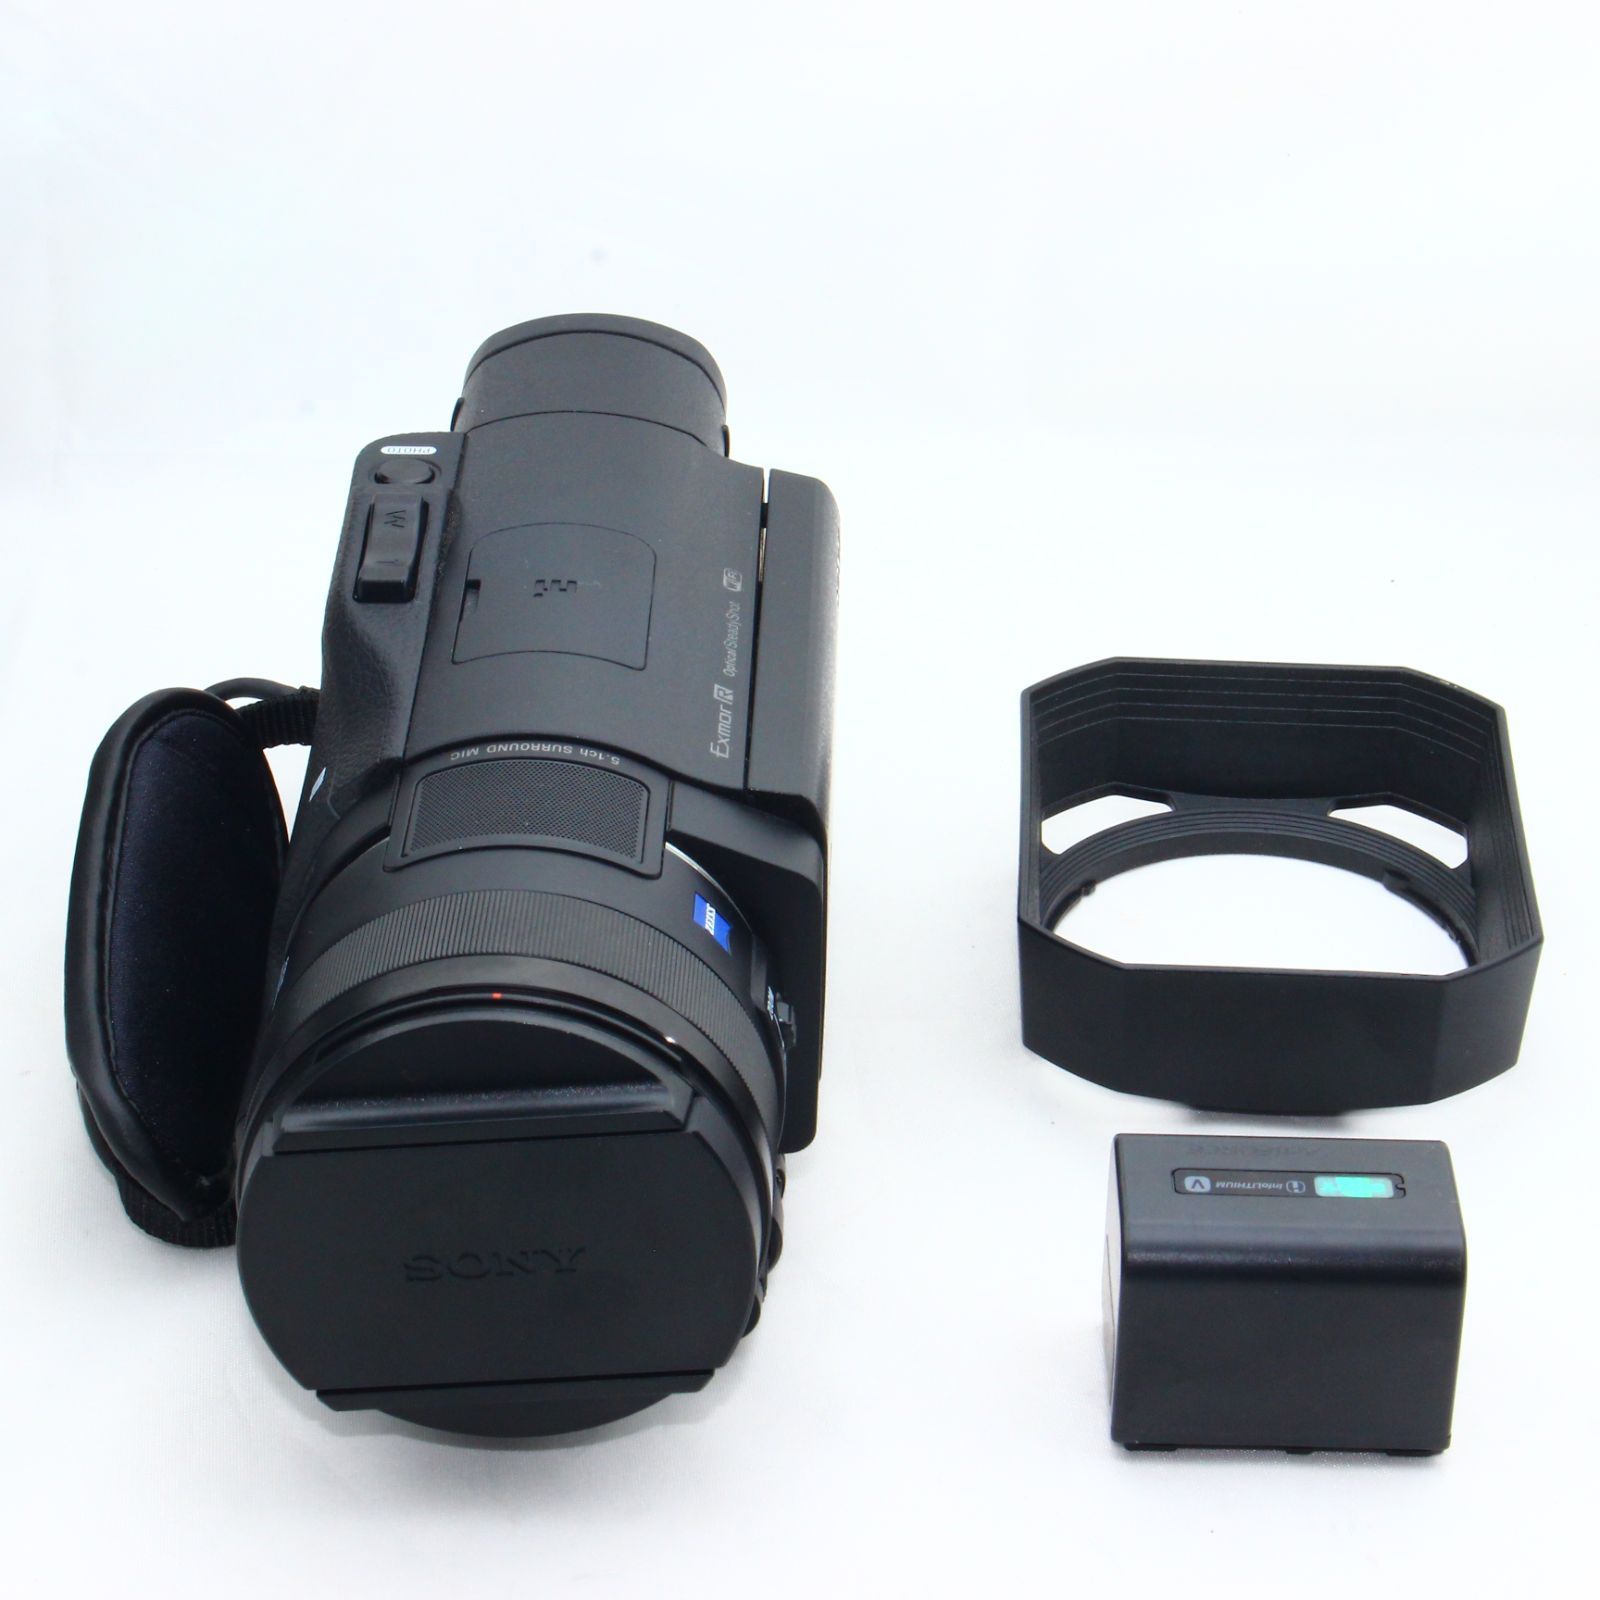 ソニー SONY ビデオカメラ FDR-AX100 4K 光学12倍 ブラック Handycam FDR-AX100 BC - 2